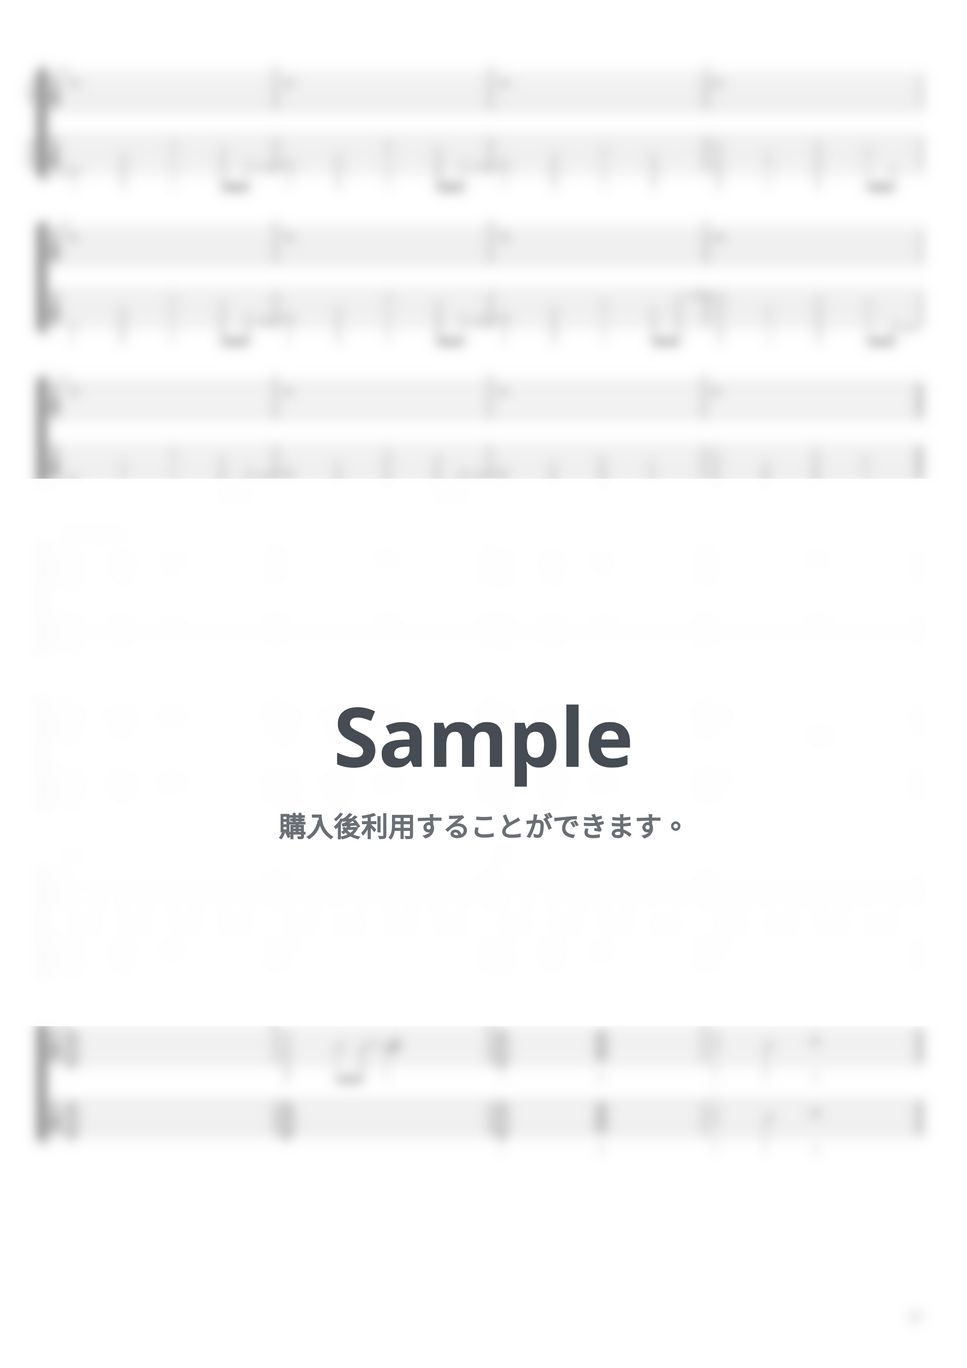 ヨルシカ - 夕凪、某、花惑い (リードギター&バッキングギター) by キリギリス